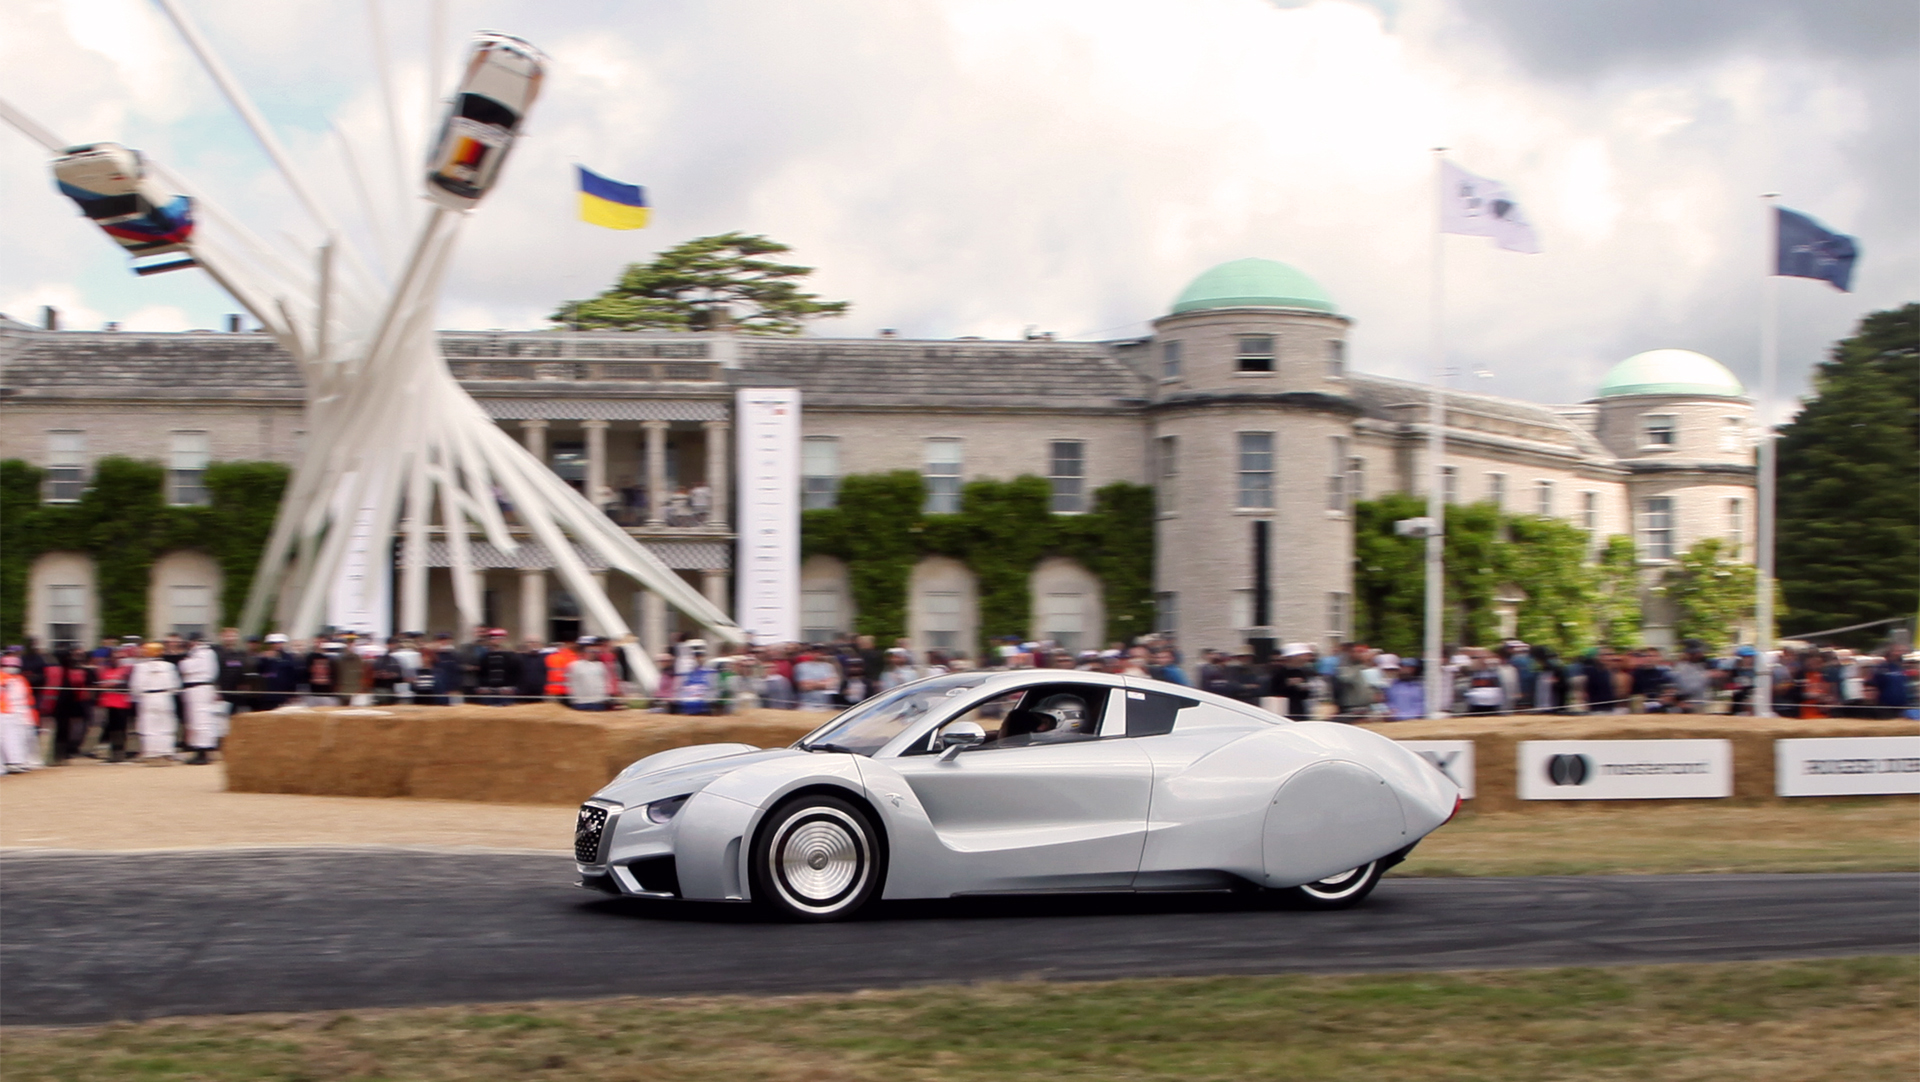 El Hispano Suiza en el Festival de la Velocidad de Goodwood de 2022. Es un auto distinto a todos, que realza la historia de una marca española  que no debía quedar en el olvido (foto Alejo Pérez Monsalvo especial para Infobae)